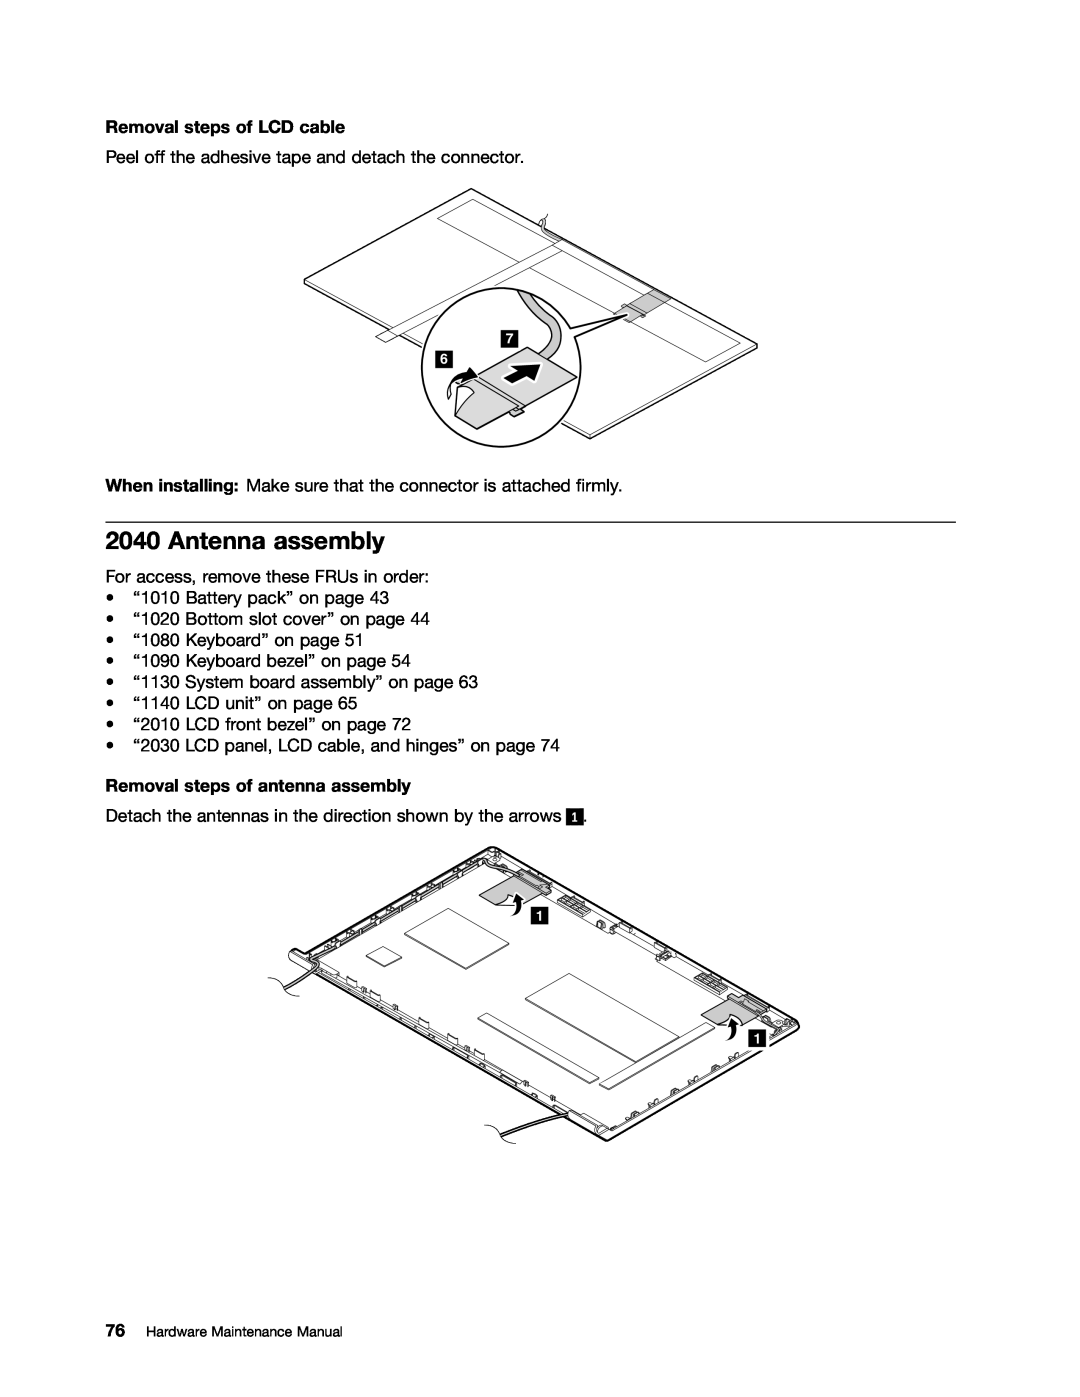 Lenovo B575E manual Antenna assembly, Removal steps of LCD cable, Removal steps of antenna assembly 